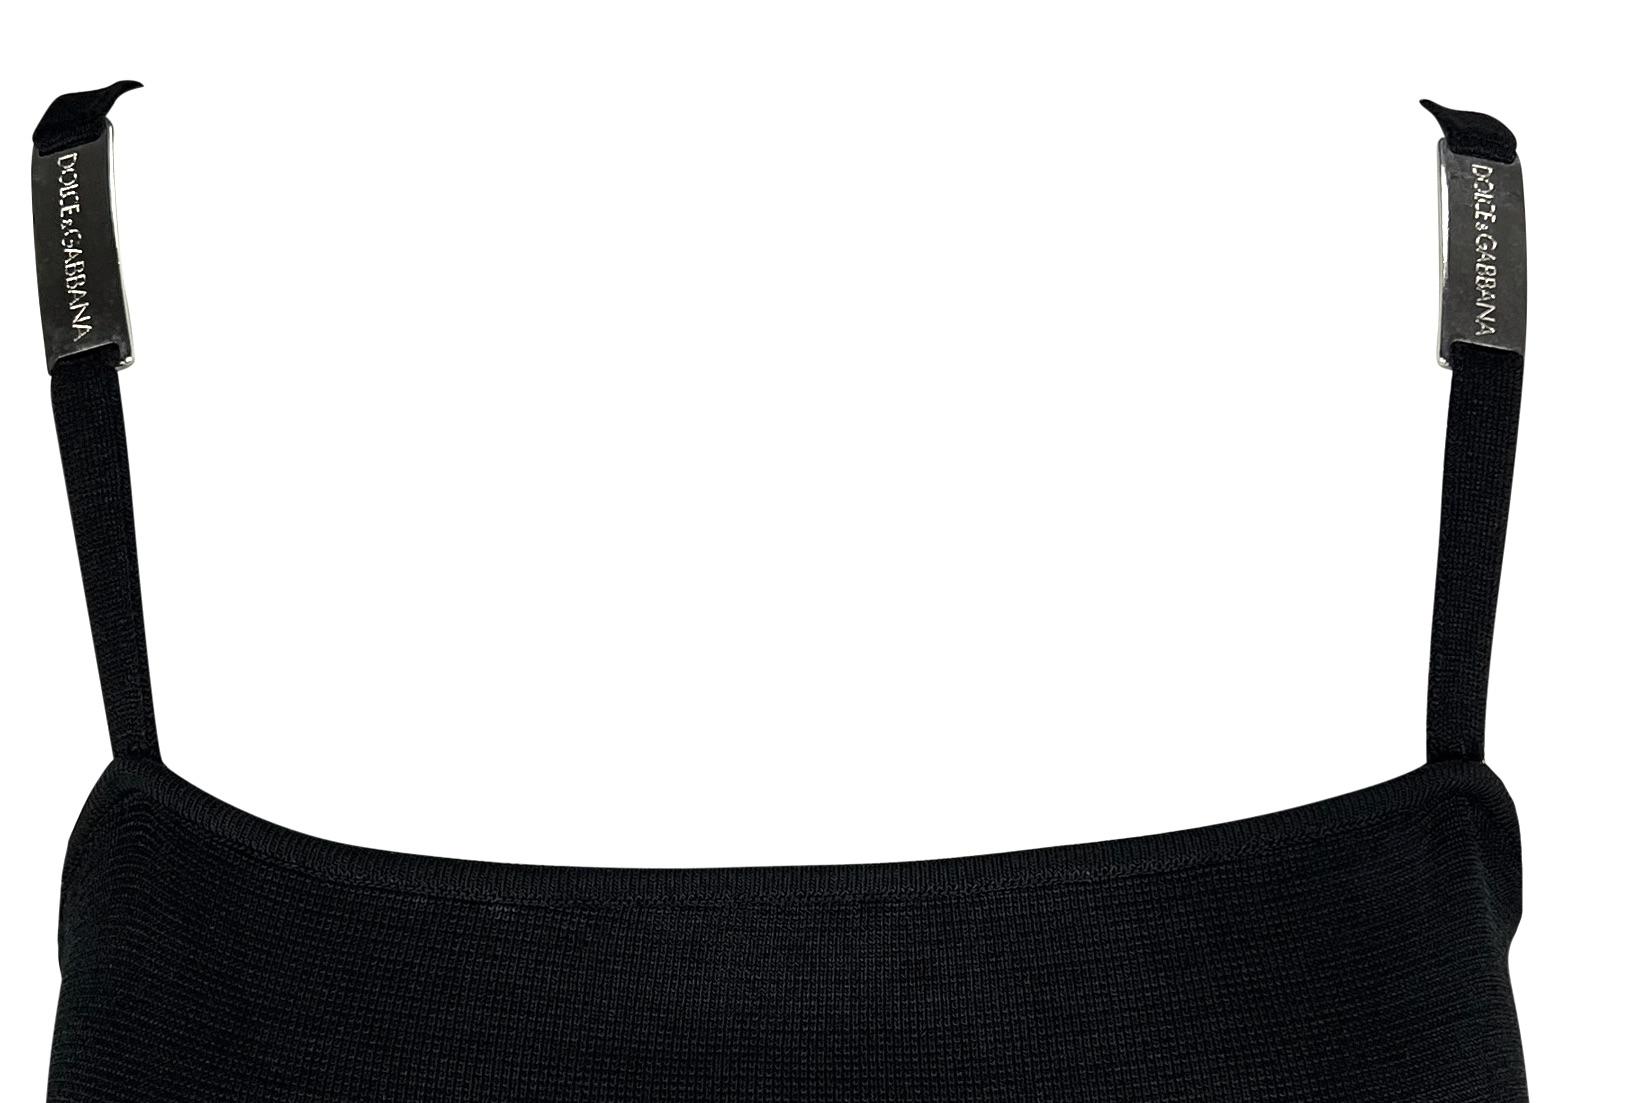 Cette mini robe Dolce & Gabbana des années 1990, confectionnée en maille noire, présente un design de type slip. Cette robe ajustée est rehaussée d'accents métalliques de marque sur les bretelles. 

Mesures approximatives :
Taille - 42IT
Poitrine :